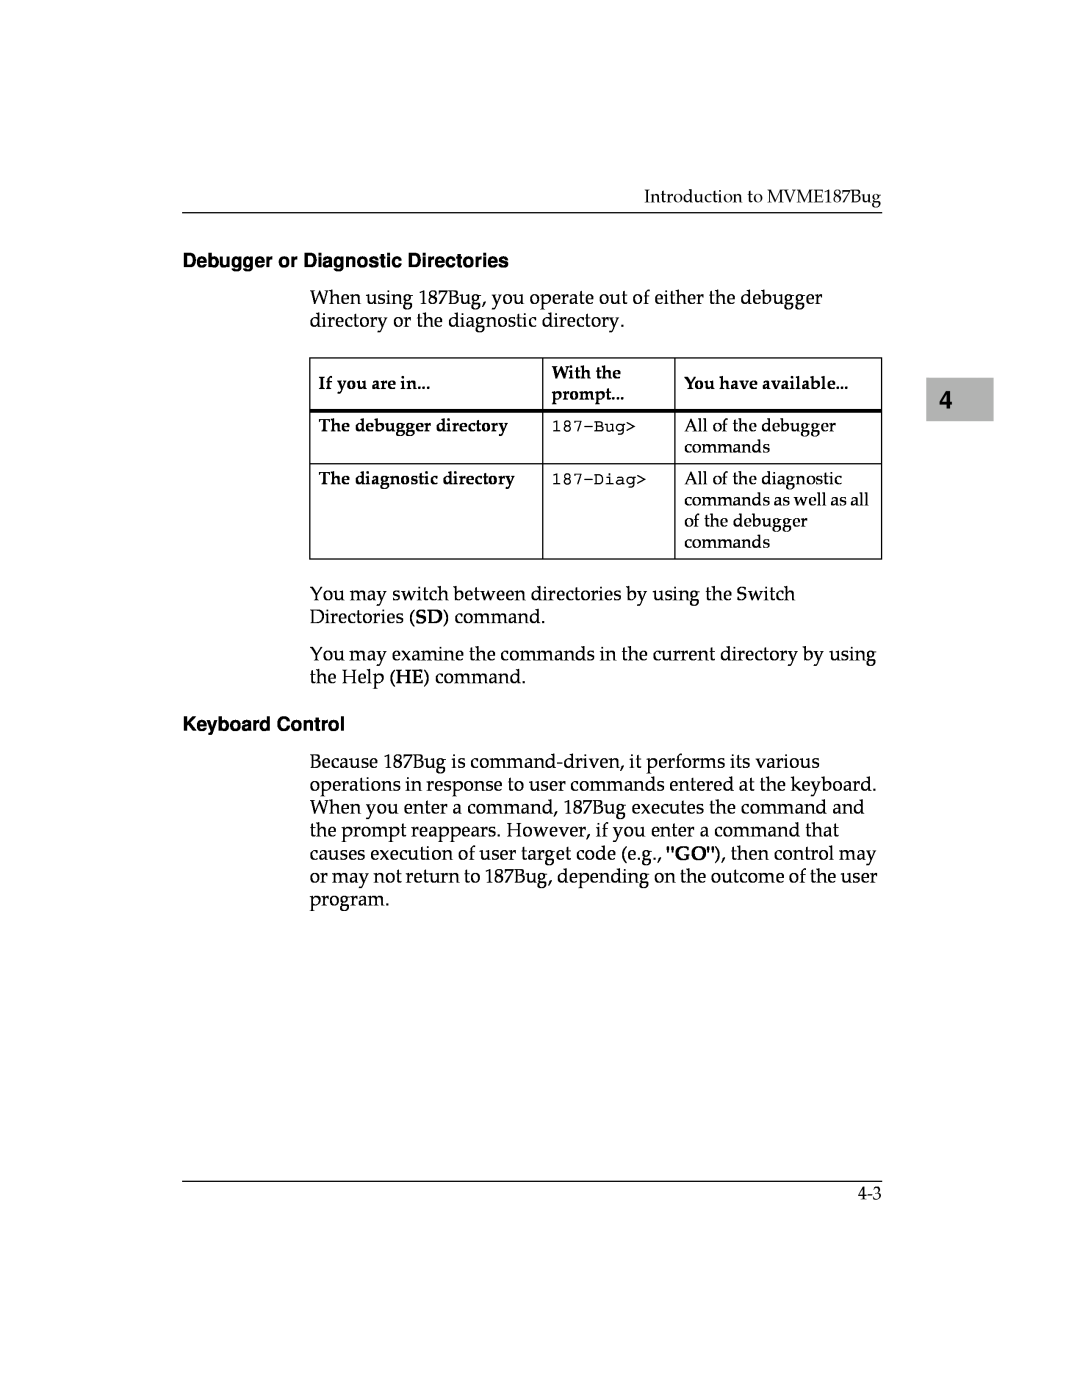 Motorola MVME187 manual Debugger or Diagnostic Directories, Keyboard Control 